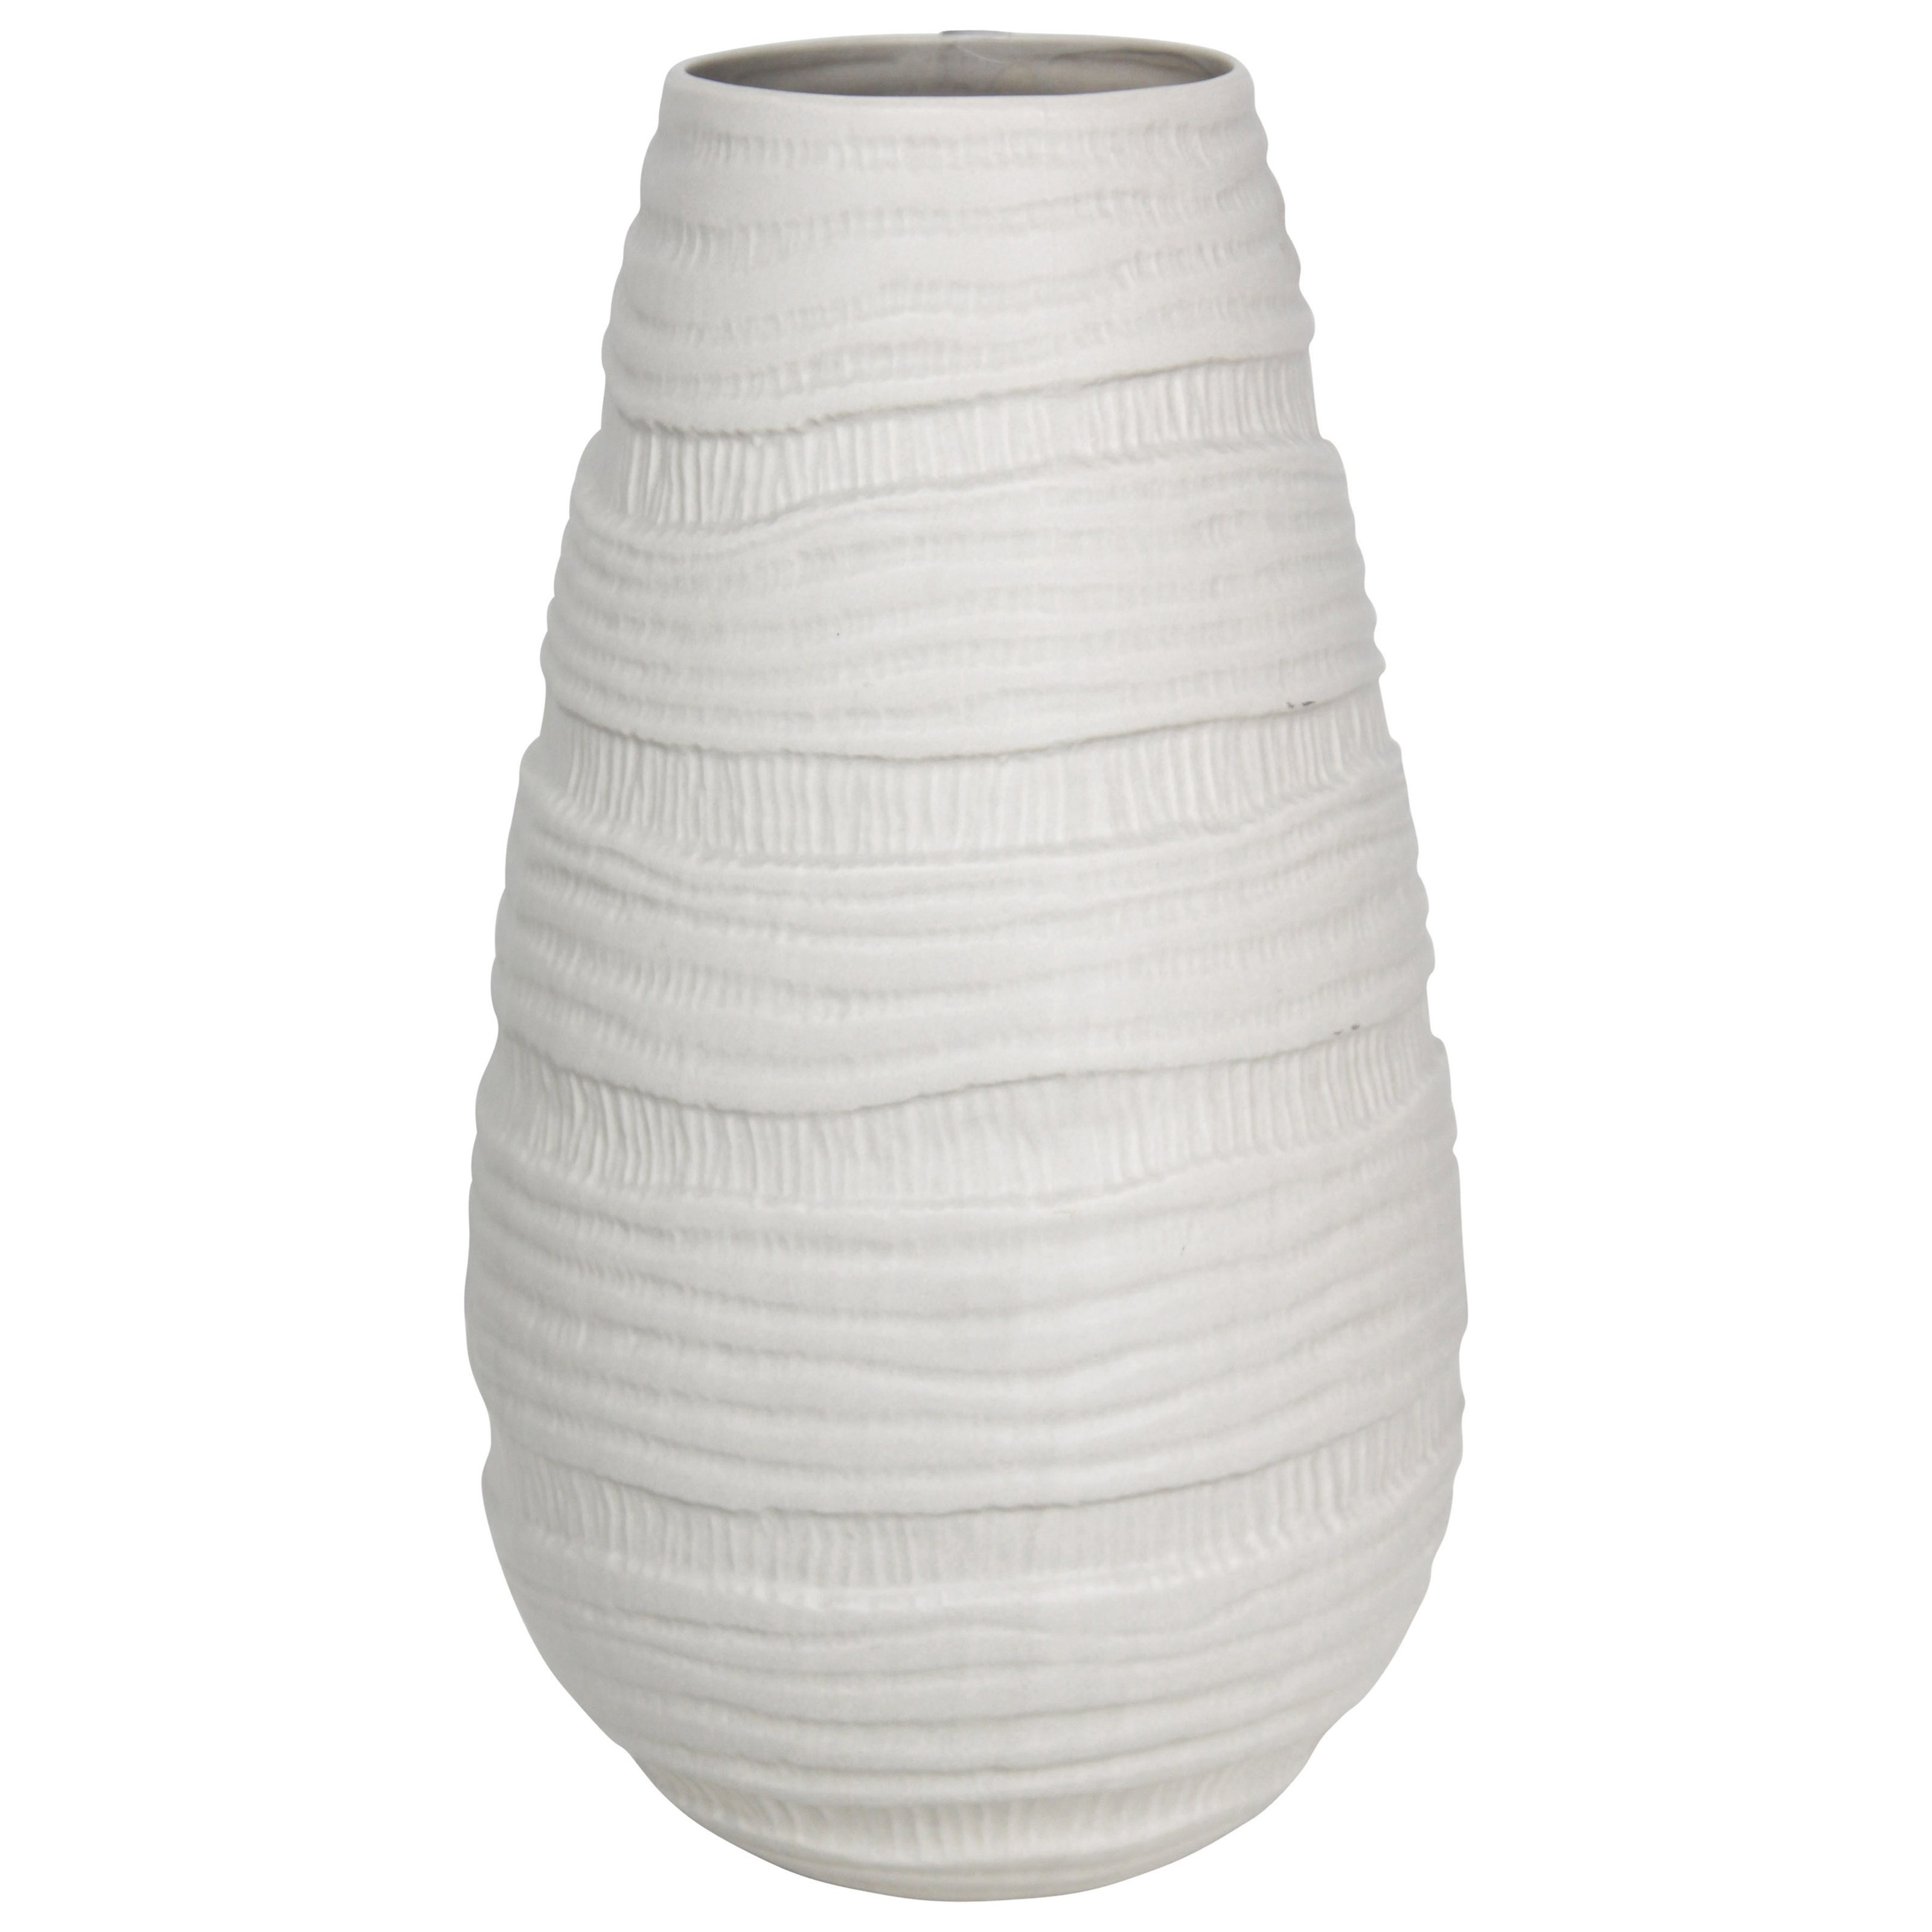 Ribbed White Ceramic Vase